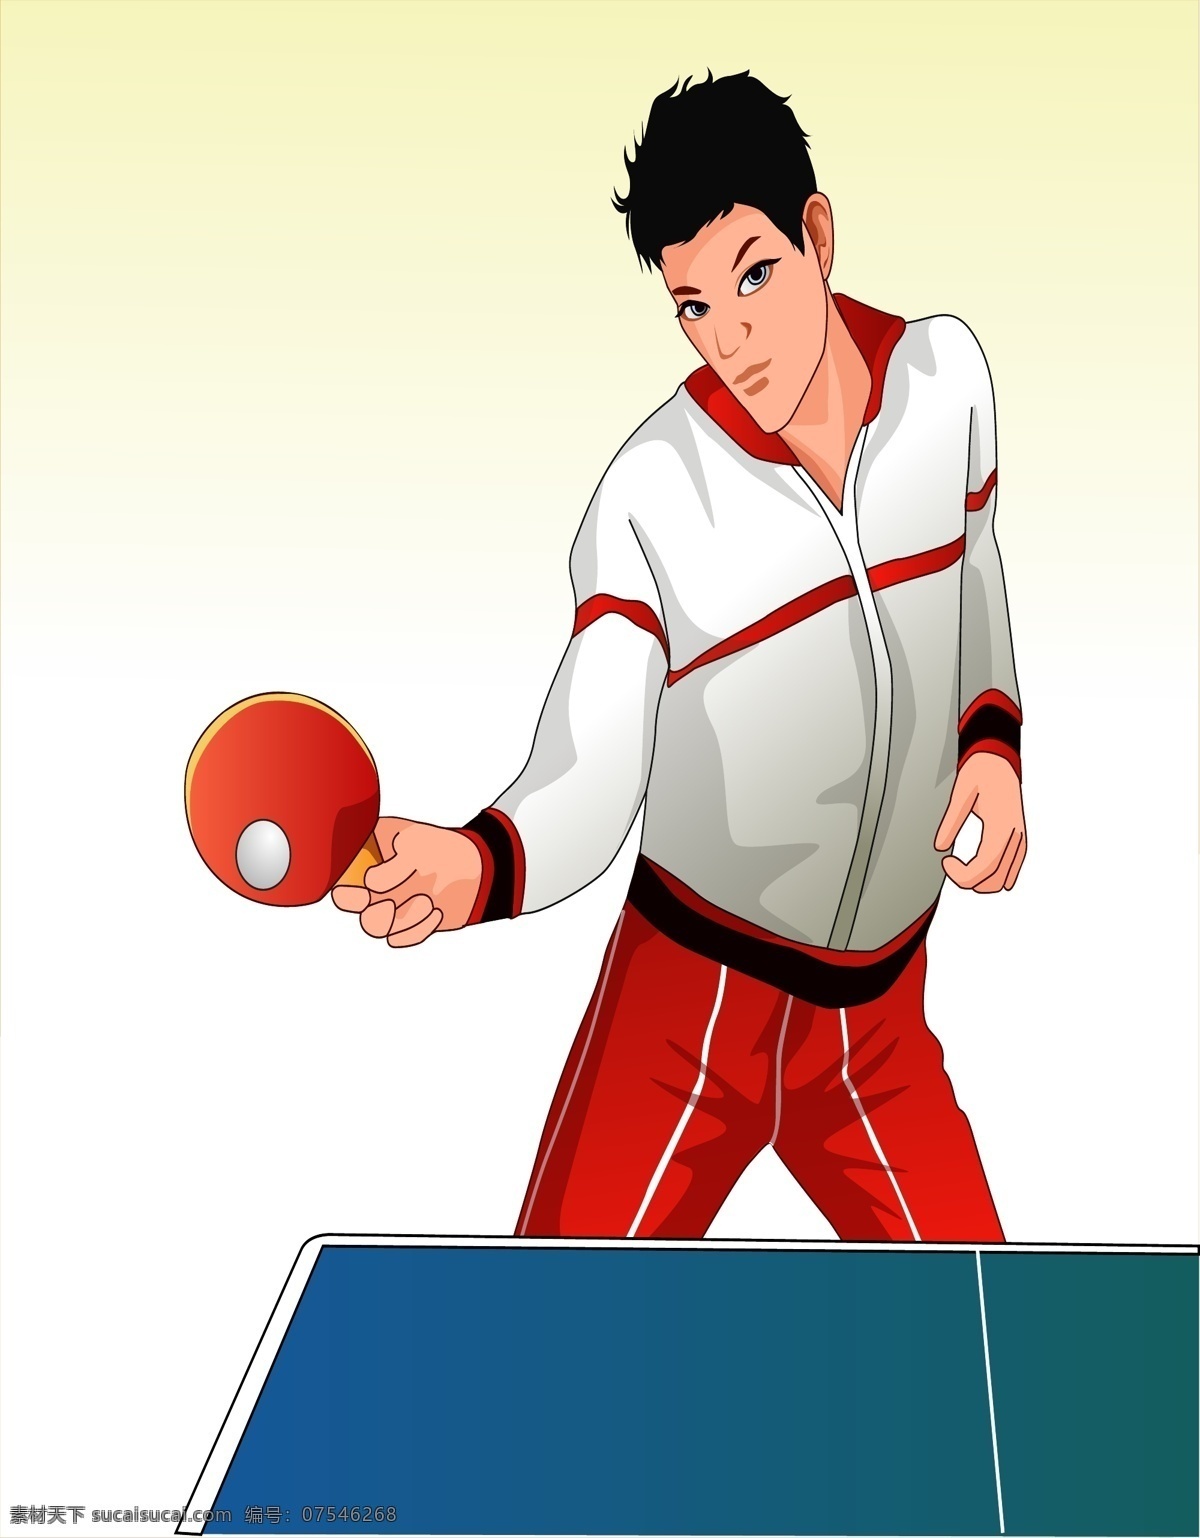 乒乓球 比赛 人物 乒乓球比赛 乒乓球网 乒乓球桌 乒乓球拍 奥运会 适量人物 适量 体育运动 文化艺术 矢量